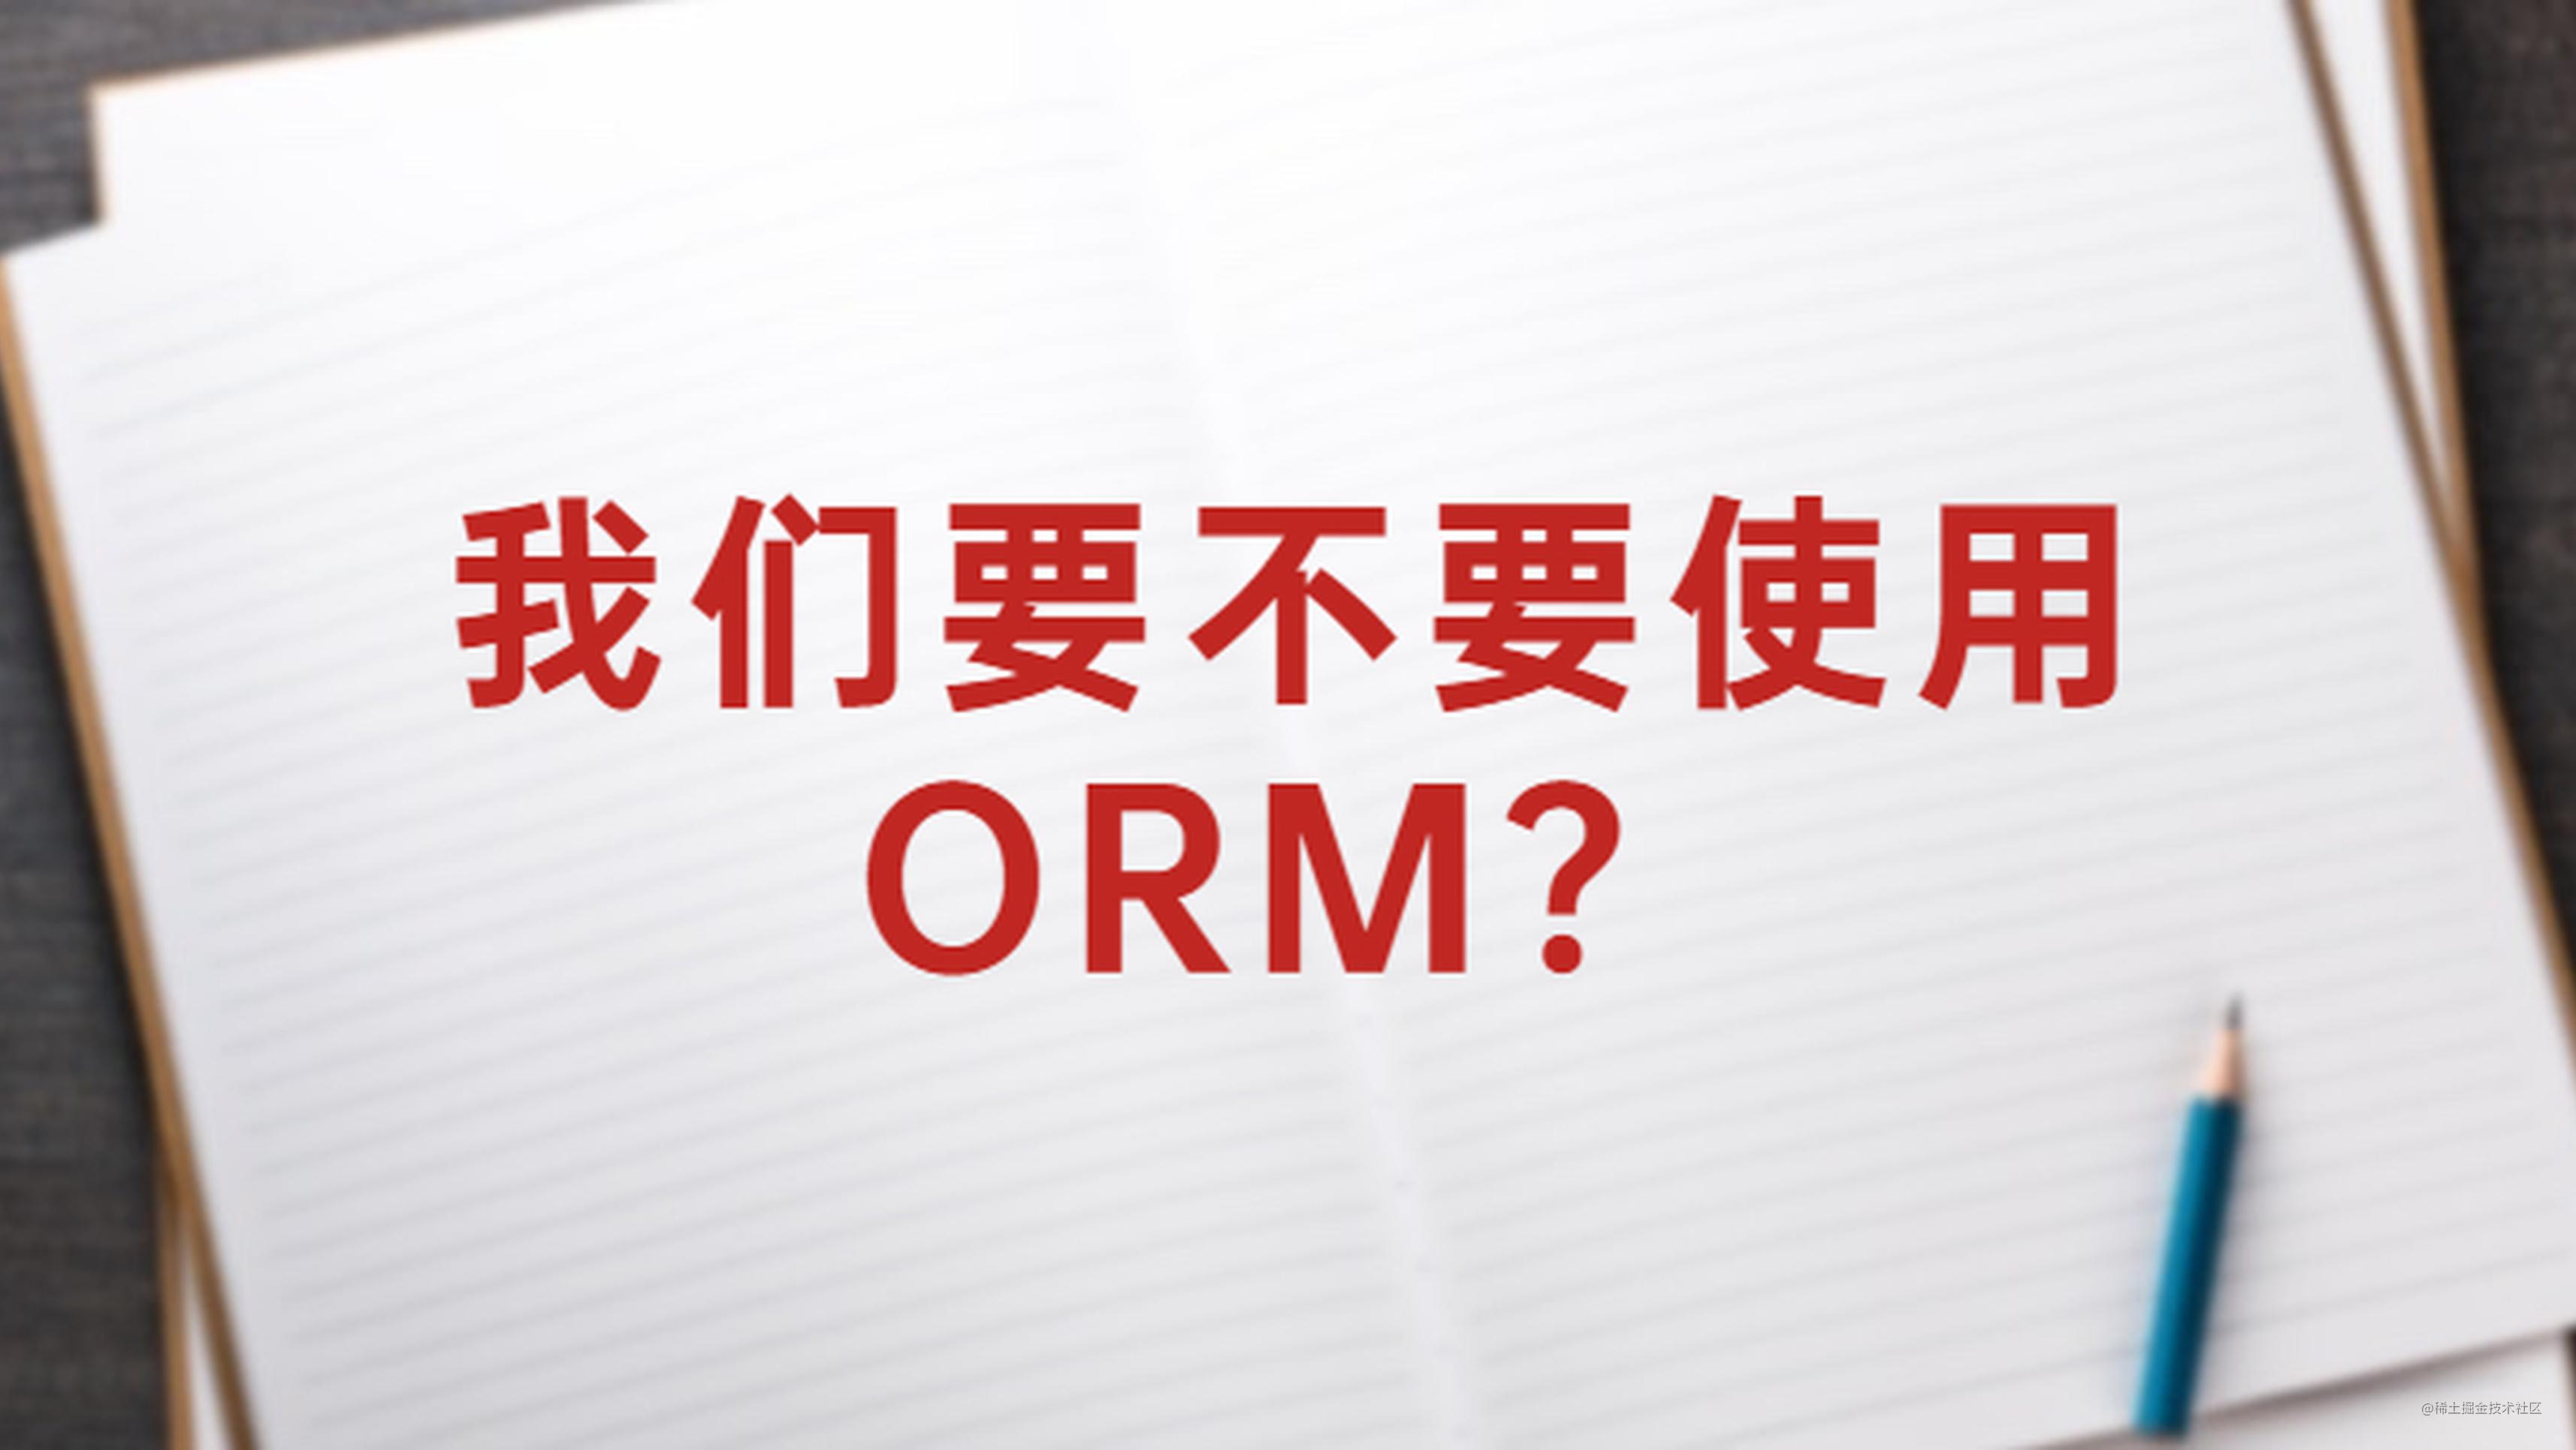 我们要不要使用 ORM？